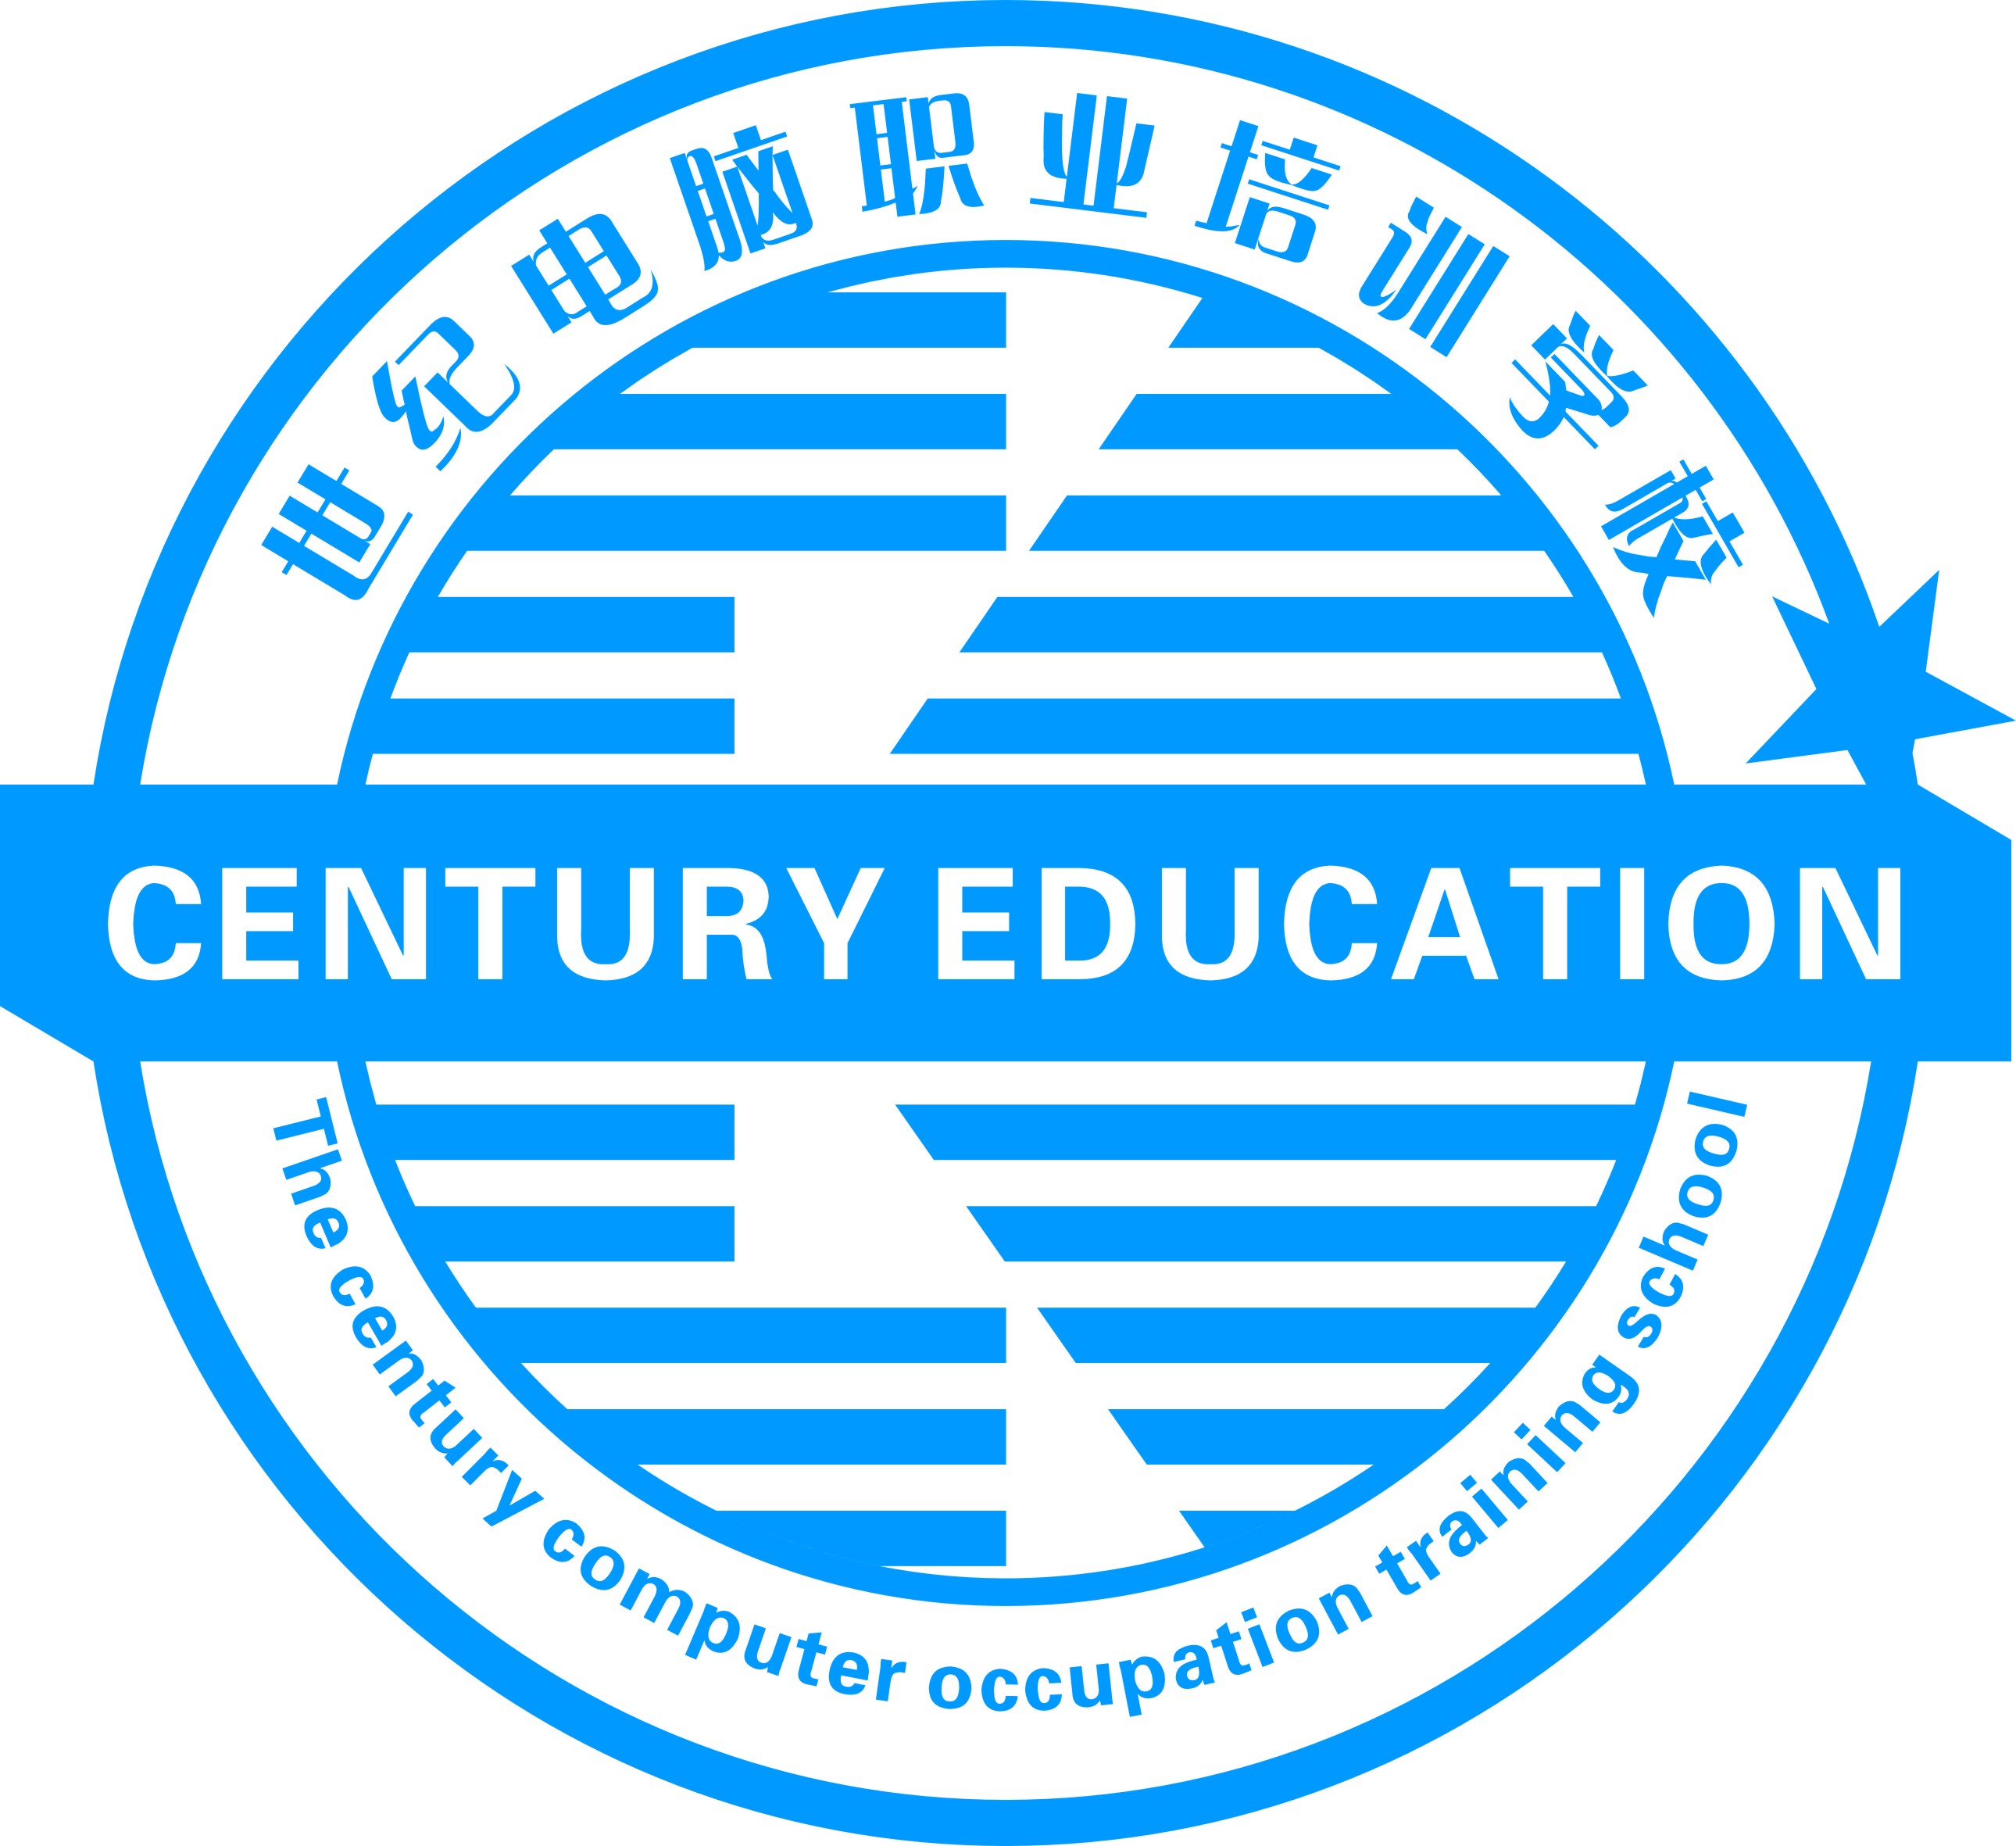 世纪教育投资（集团）有限责任公司成立2001年，是中国西部及具影响力的涉及职业教育、大中专学历教育、幼儿教育及特长教育为一体的大型连锁教育机构。　
世纪学前教育是世纪教育集团旗下的专业从事2-6岁学前教育、0-3岁母婴多元智能训练、儿童生存体验及幼儿特长教育的为一体的专业化幼儿教育机构。目前举办有数家全资幼稚园、儿童生存体验中心，母婴多元智能训练营及特长教育中心。 自2002年举办第一家幼稚园以来，目前拥有在园幼儿2000余名，教职员工数百余人。